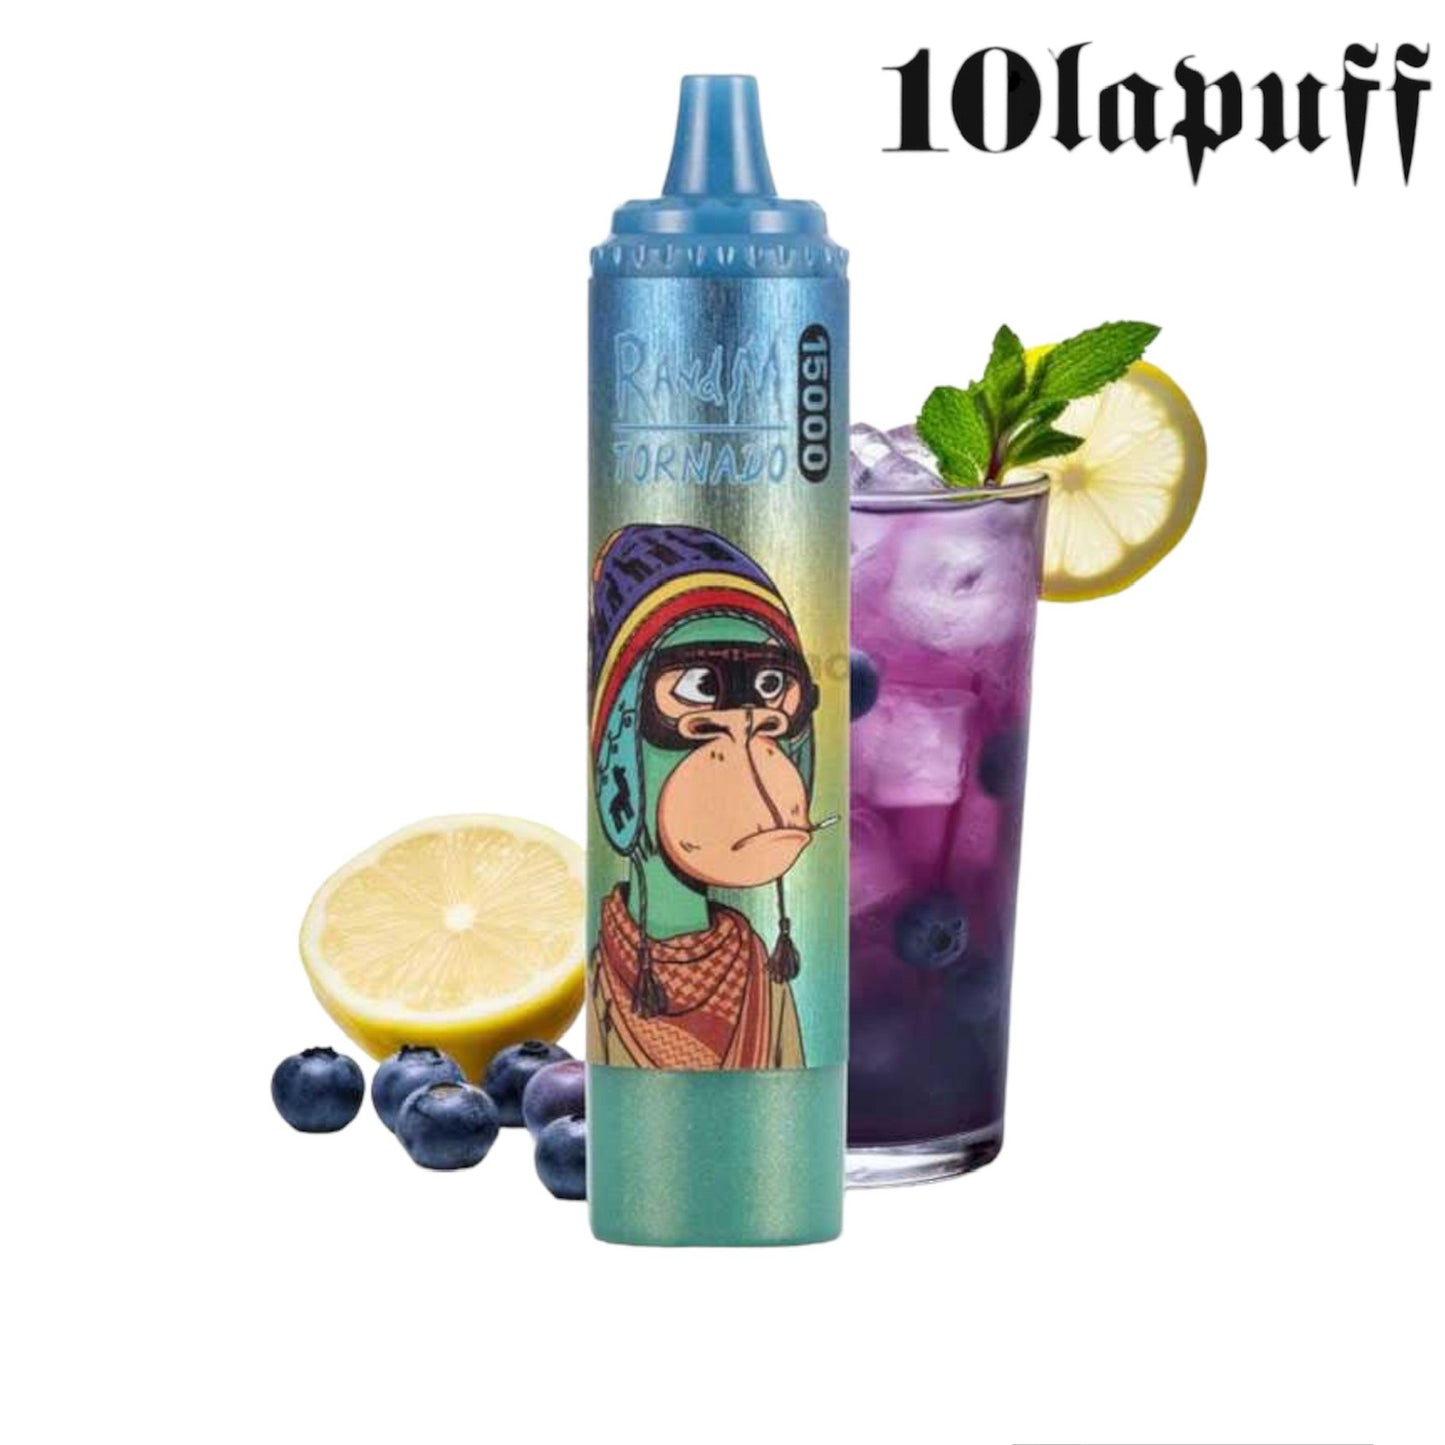 PUFF 15000 TORNADO RandM - Blue Razz Lemonade